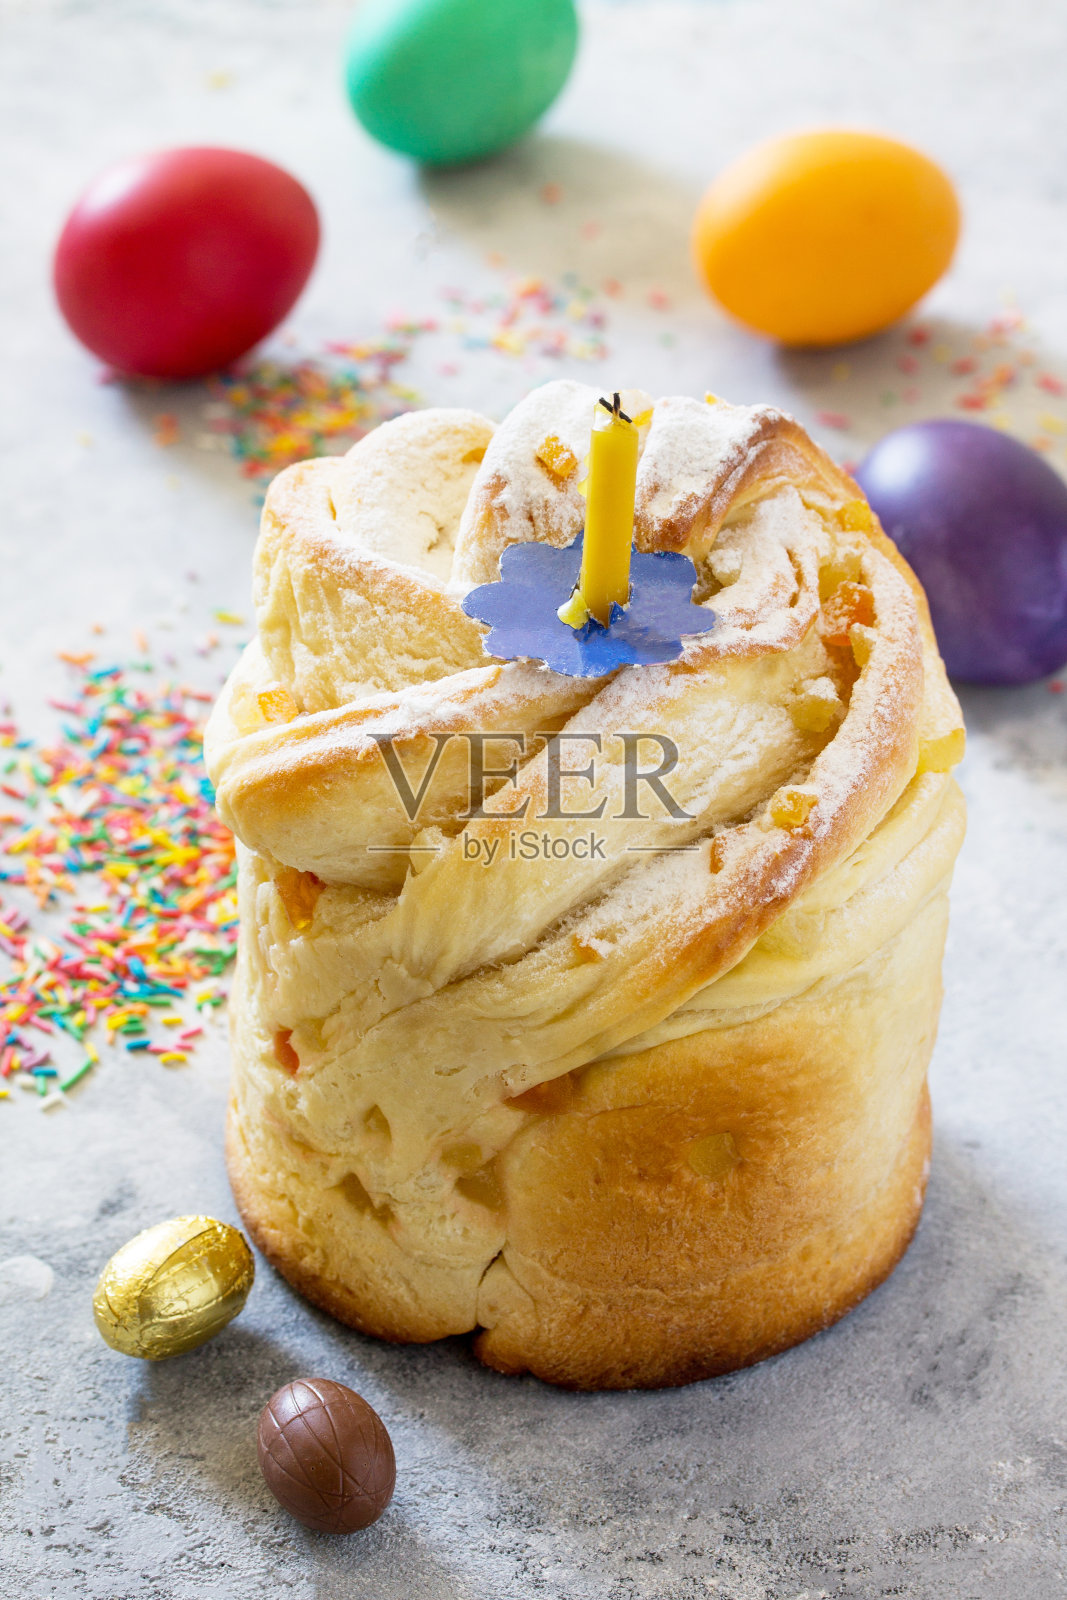 复活节的背景。节日餐桌上的传统食物是面包、糖果、蛋糕和复活节彩蛋。复活节的配方。照片摄影图片